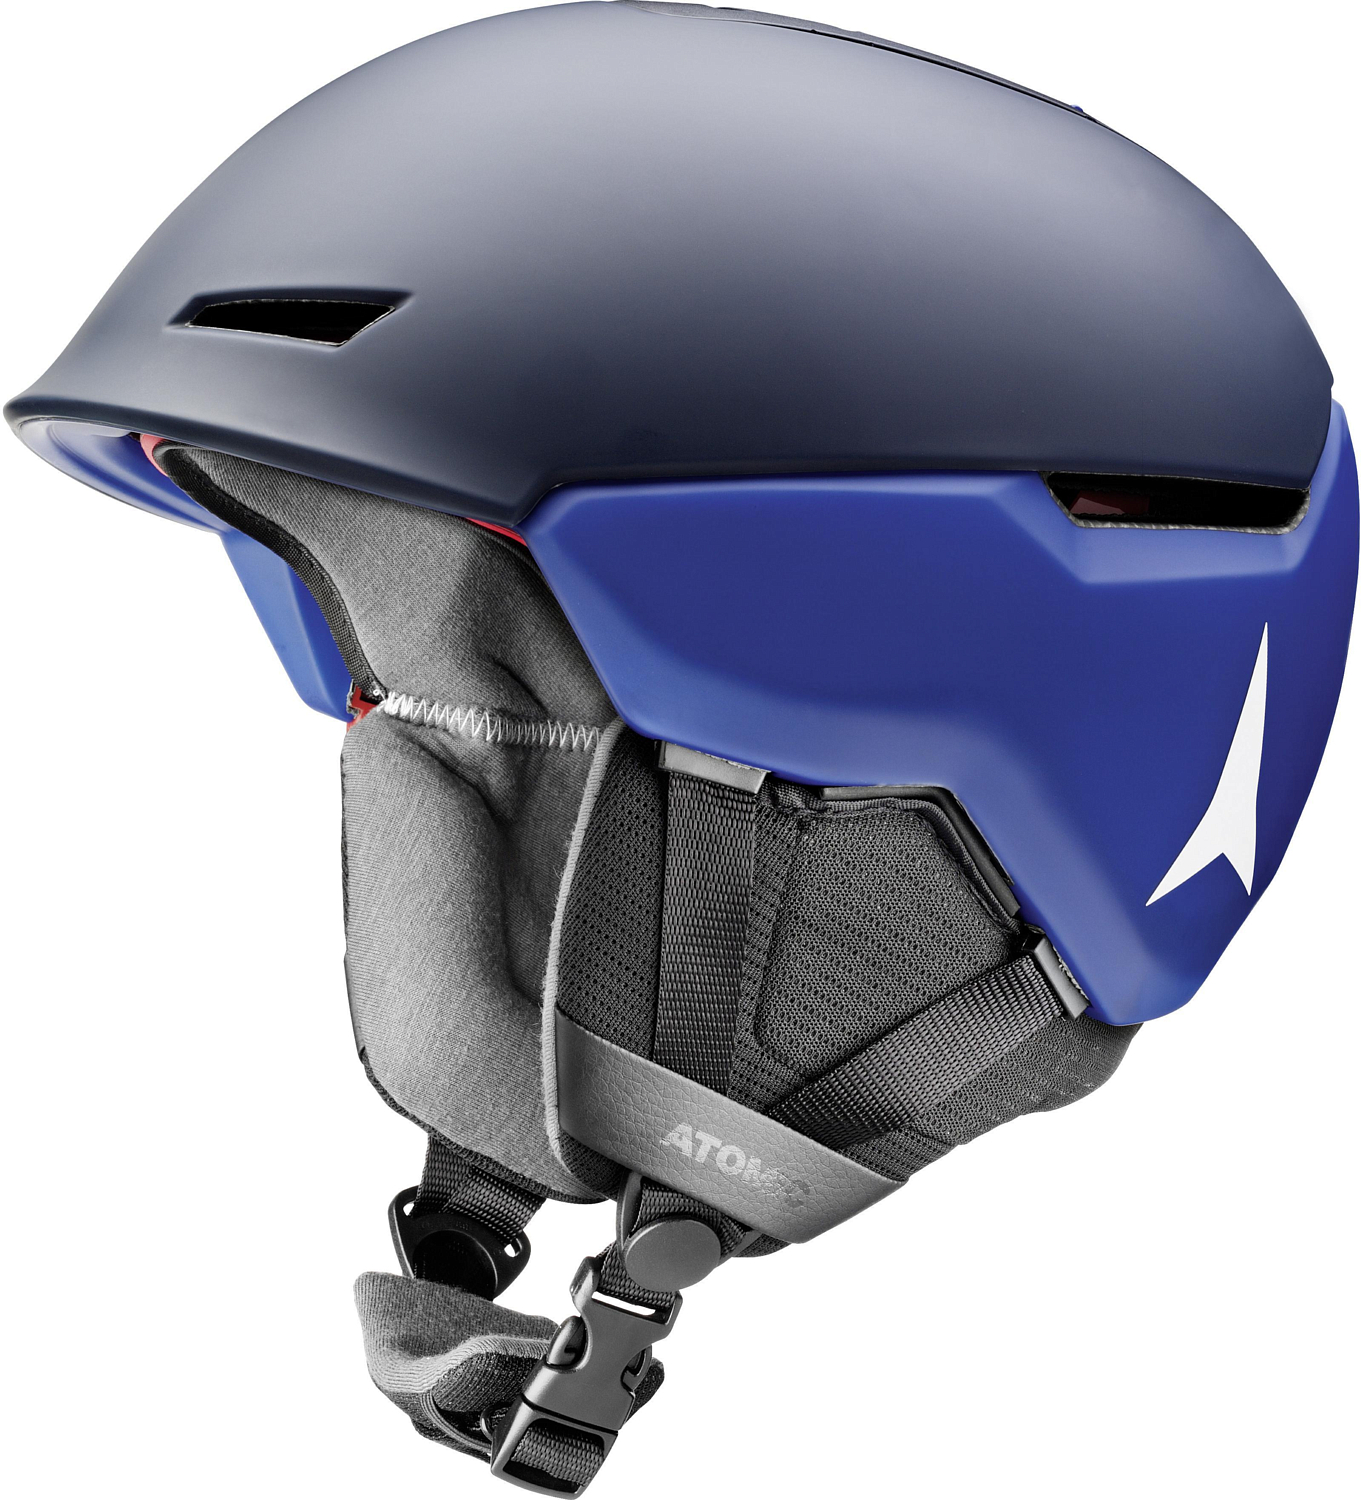 Зимний шлем ATOMIC Revent+Lf Dark Blue